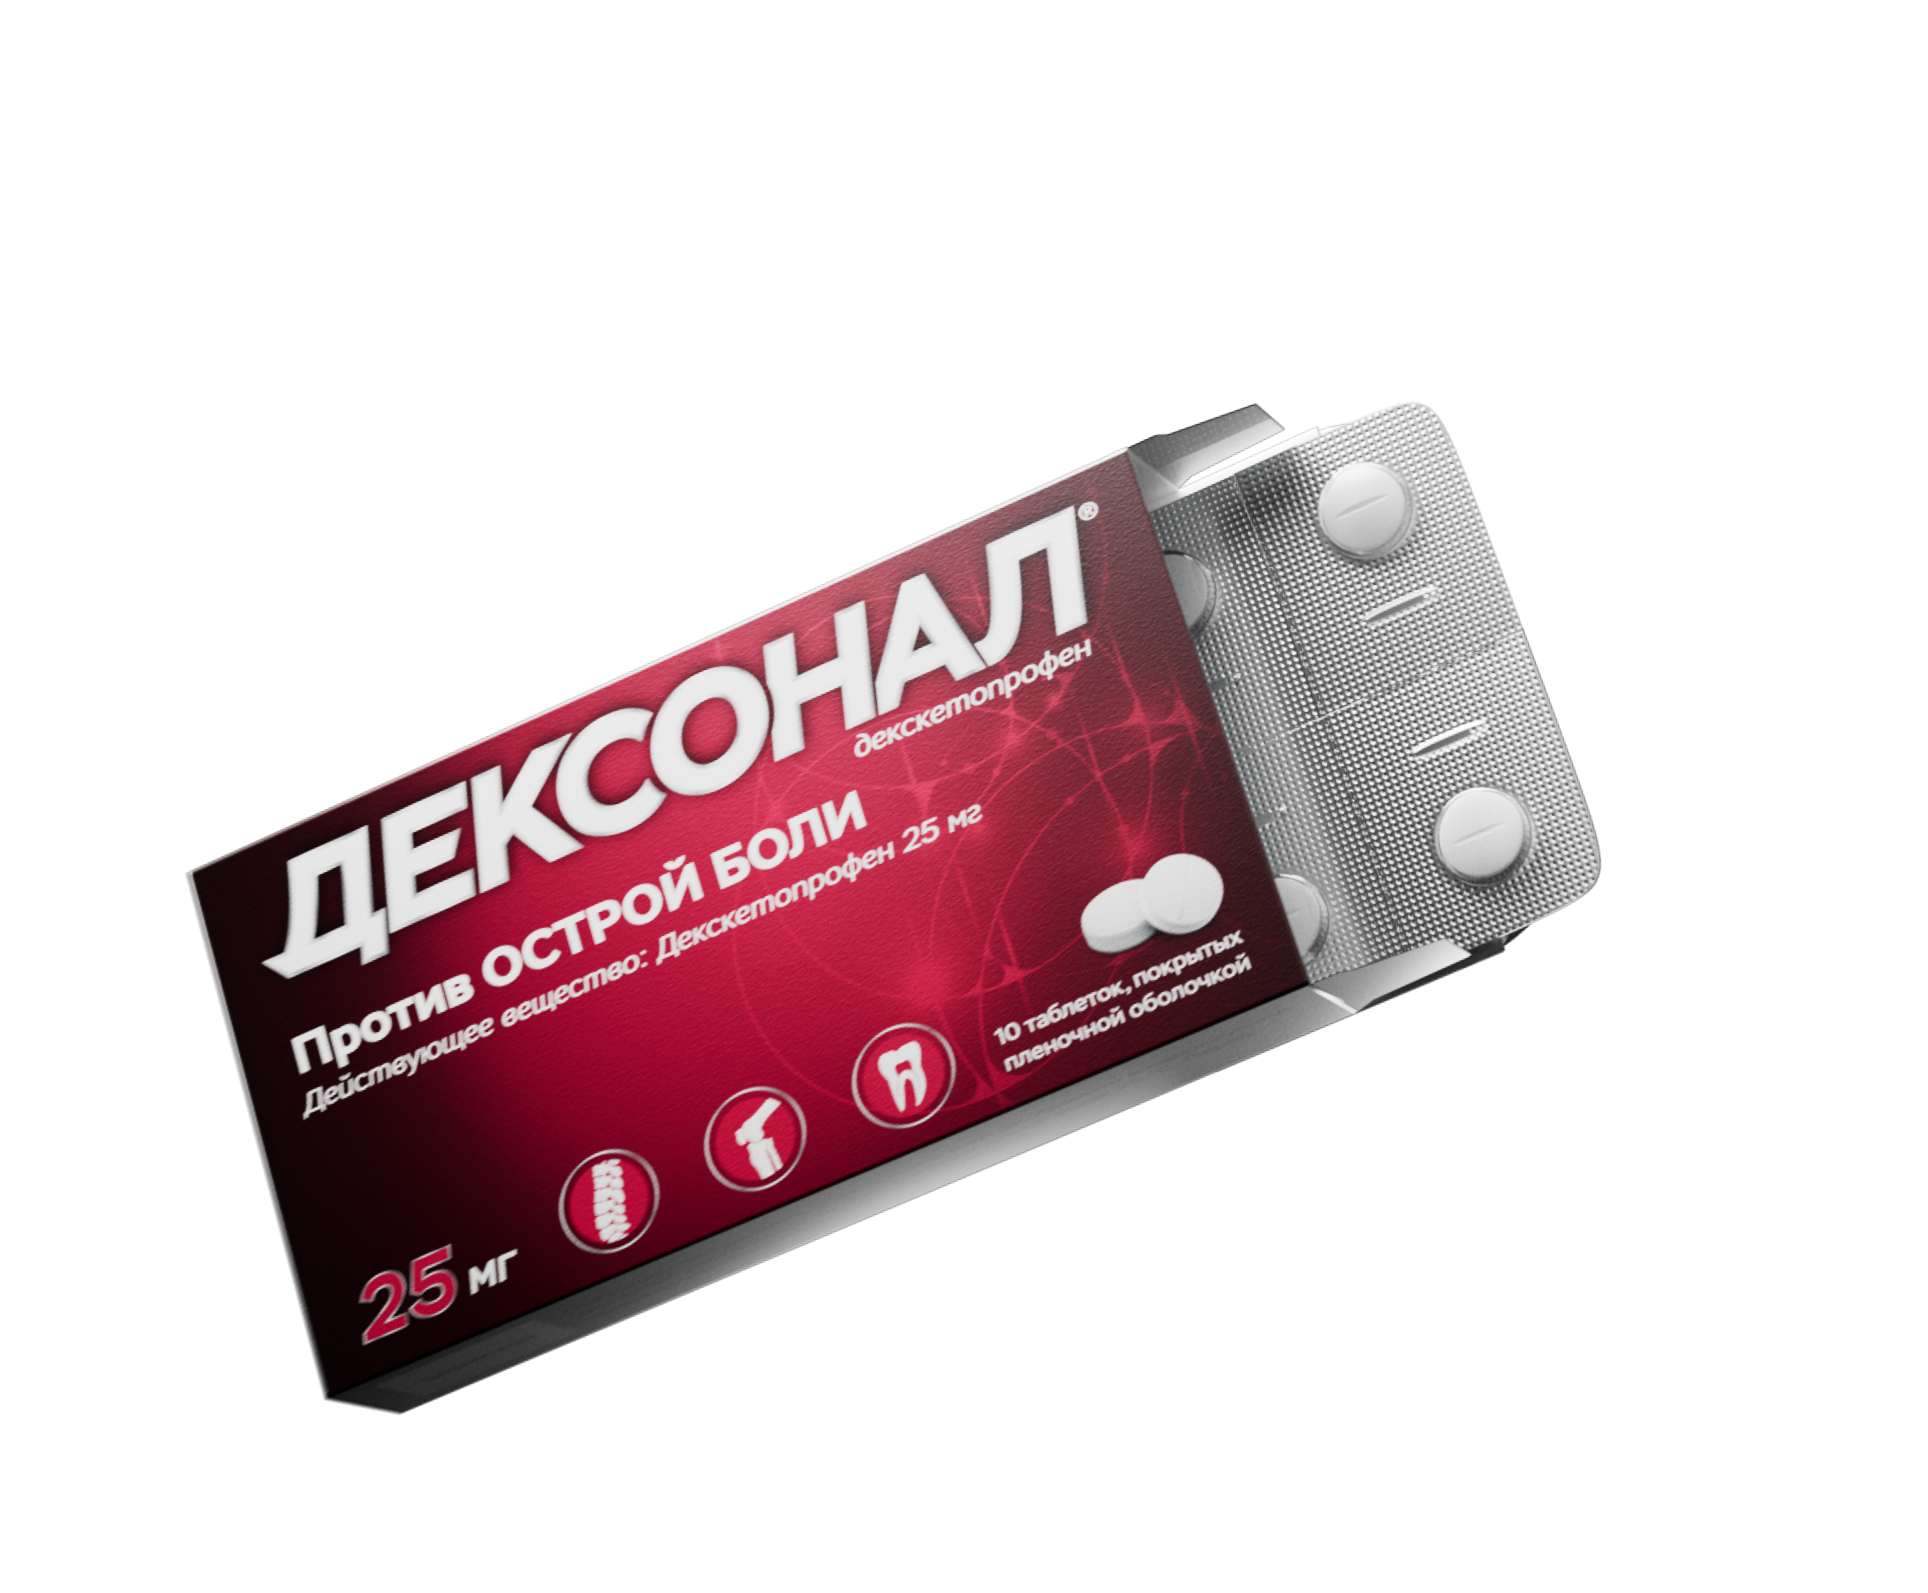 Дексонал 25 мг – нестероидный противовоспалительный препарат .